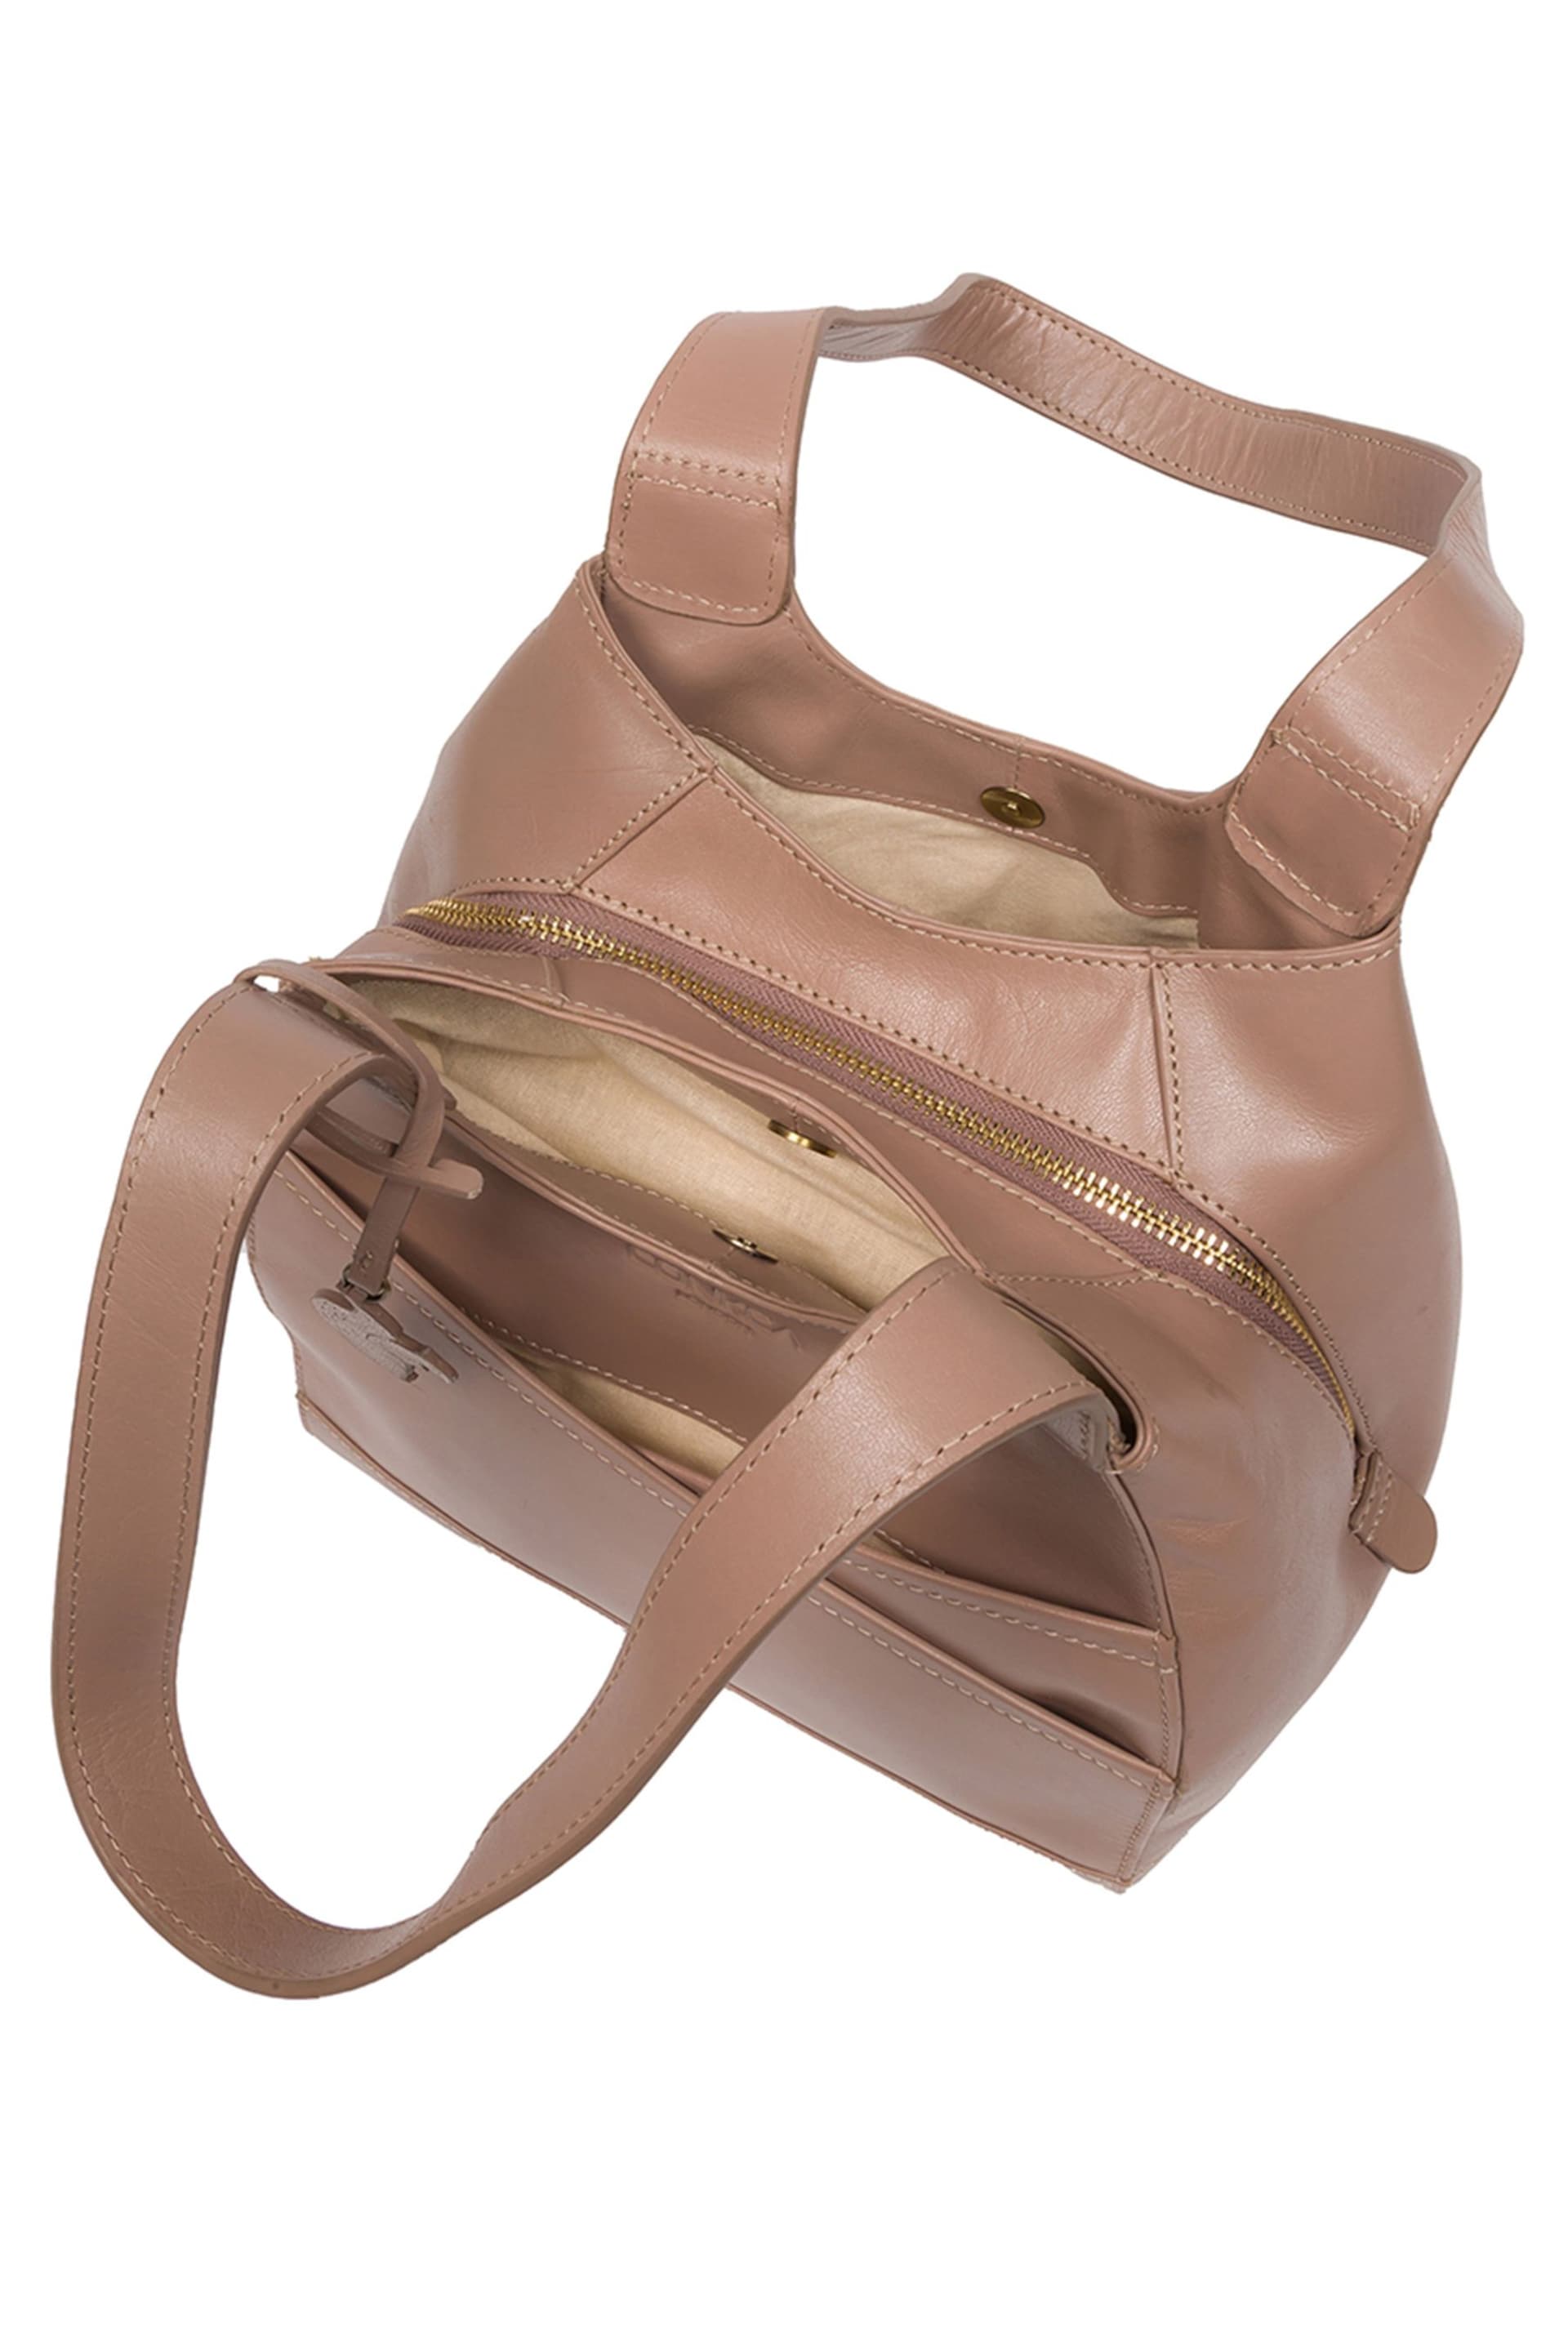 Conkca Juliet Handbag - Image 5 of 8